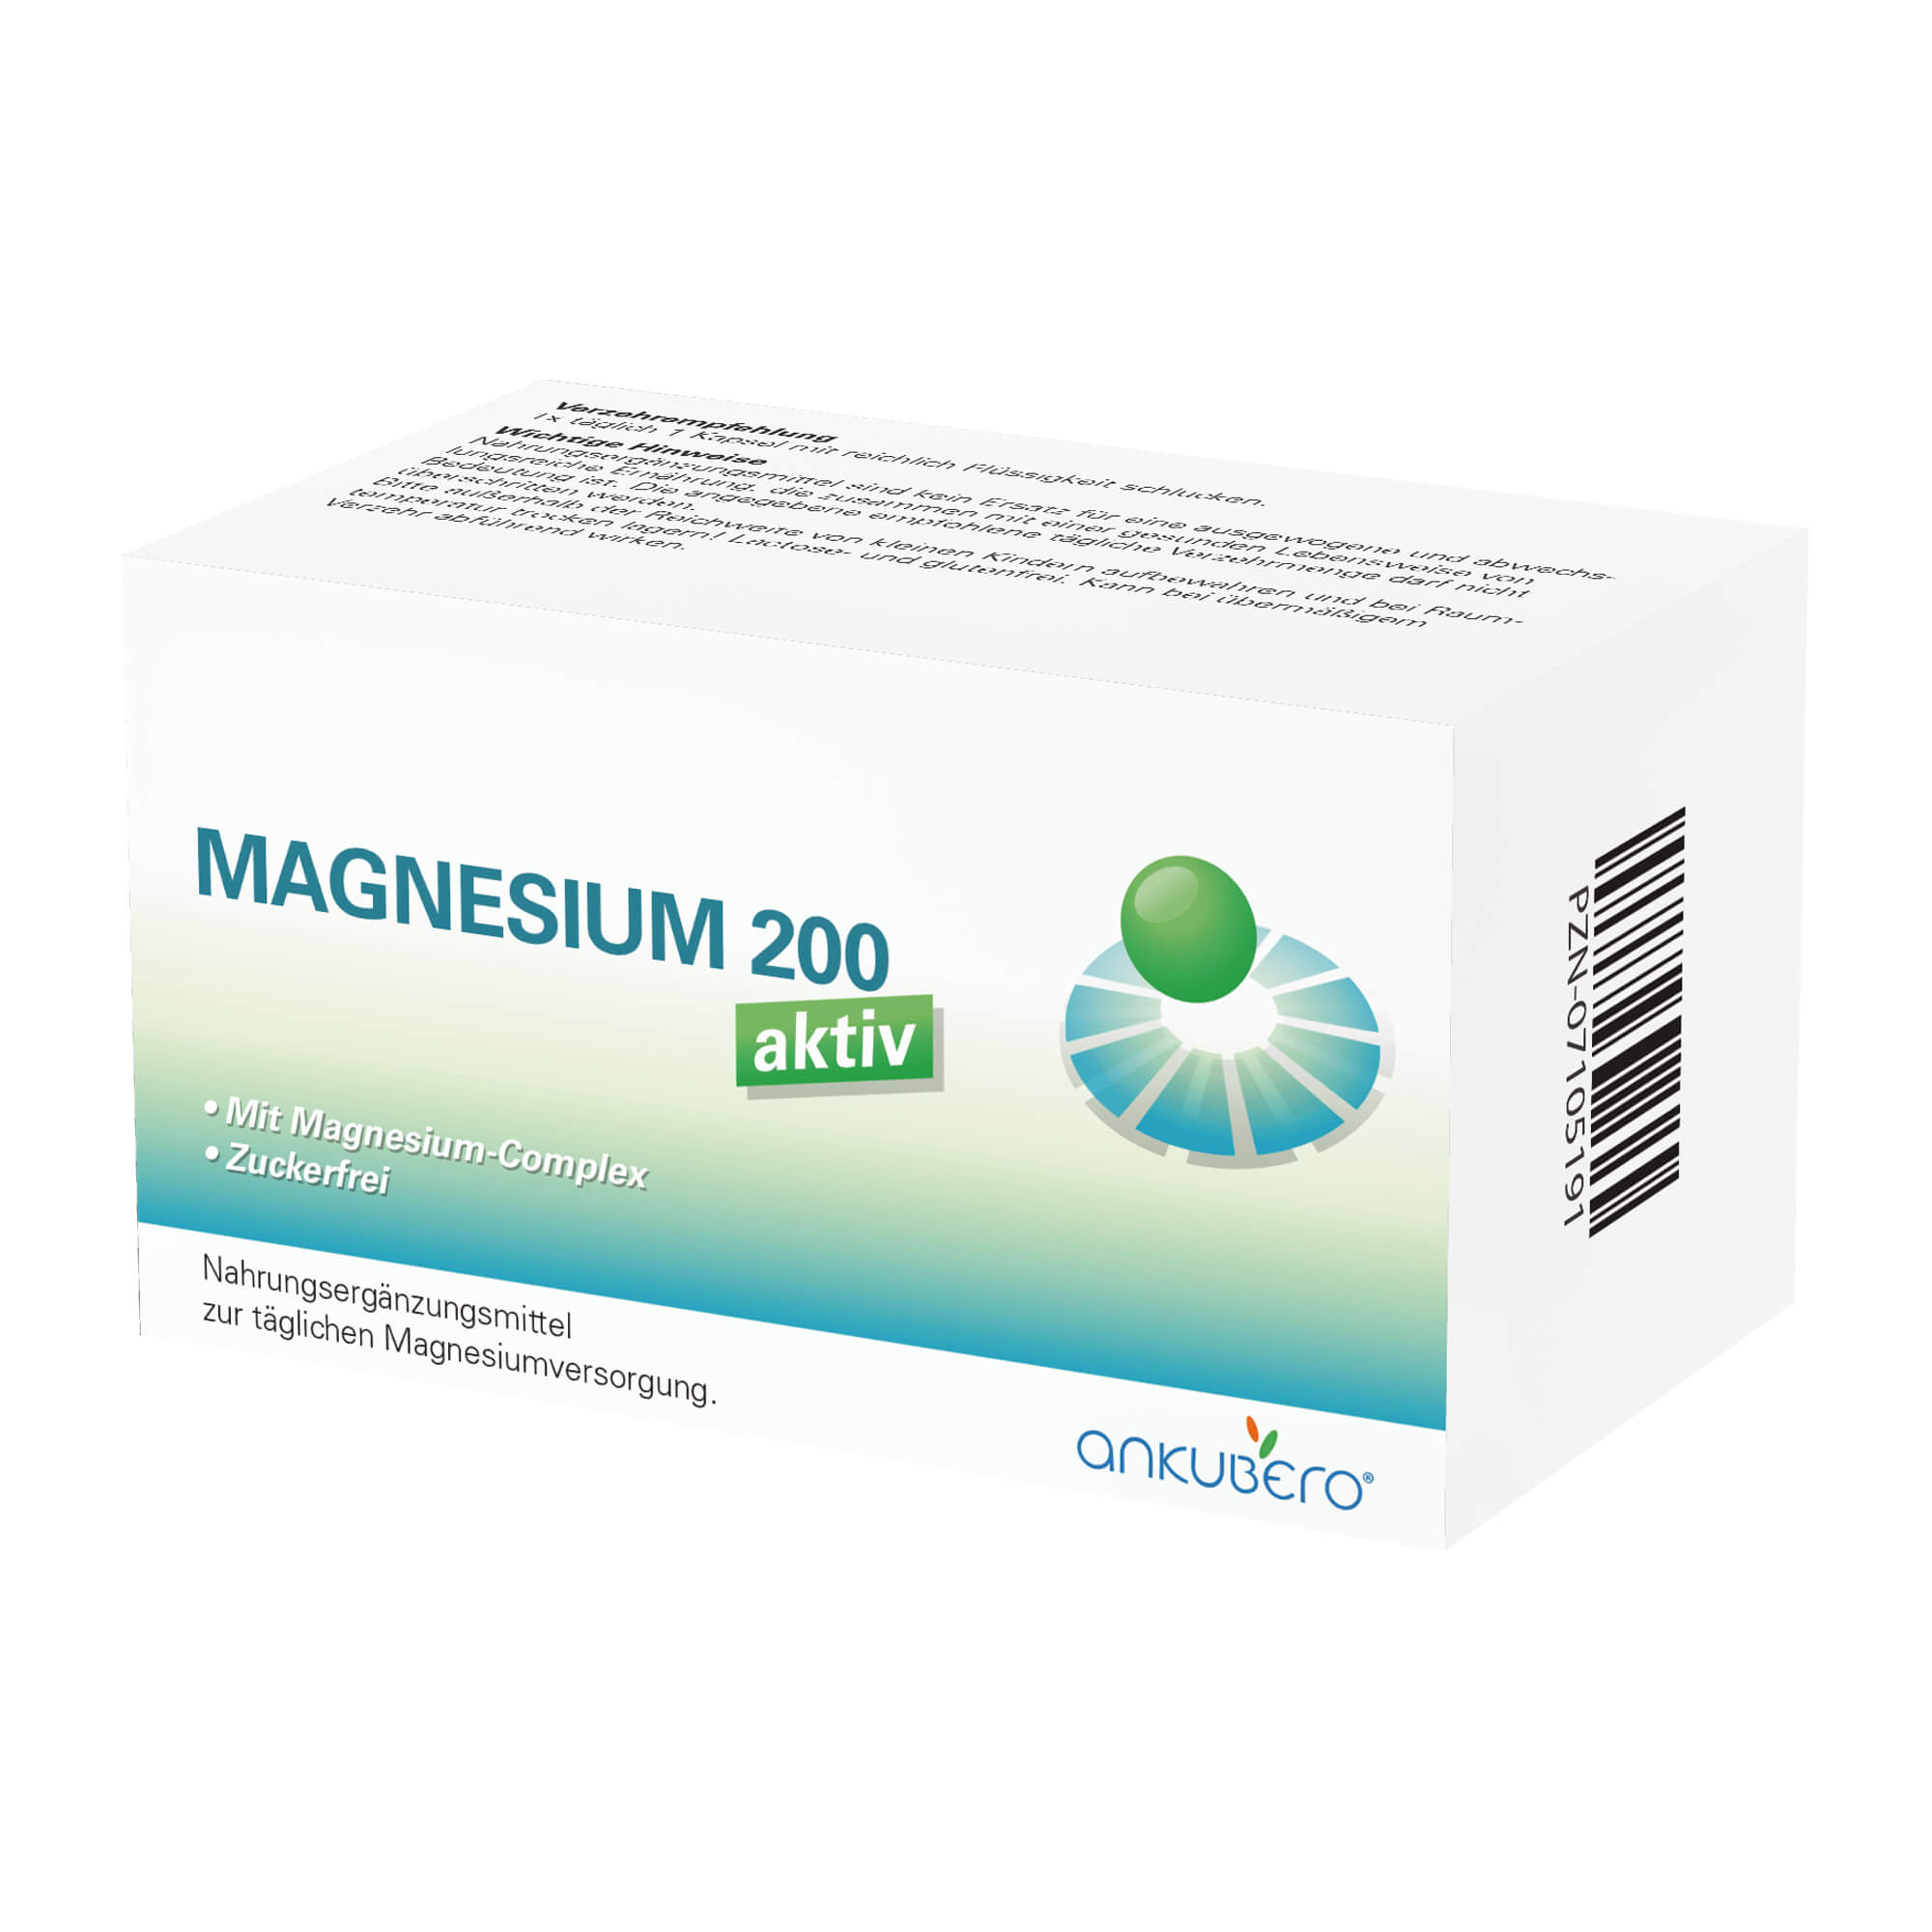 Nahrungsergänzungsmittel mit Magnesium-Complex.